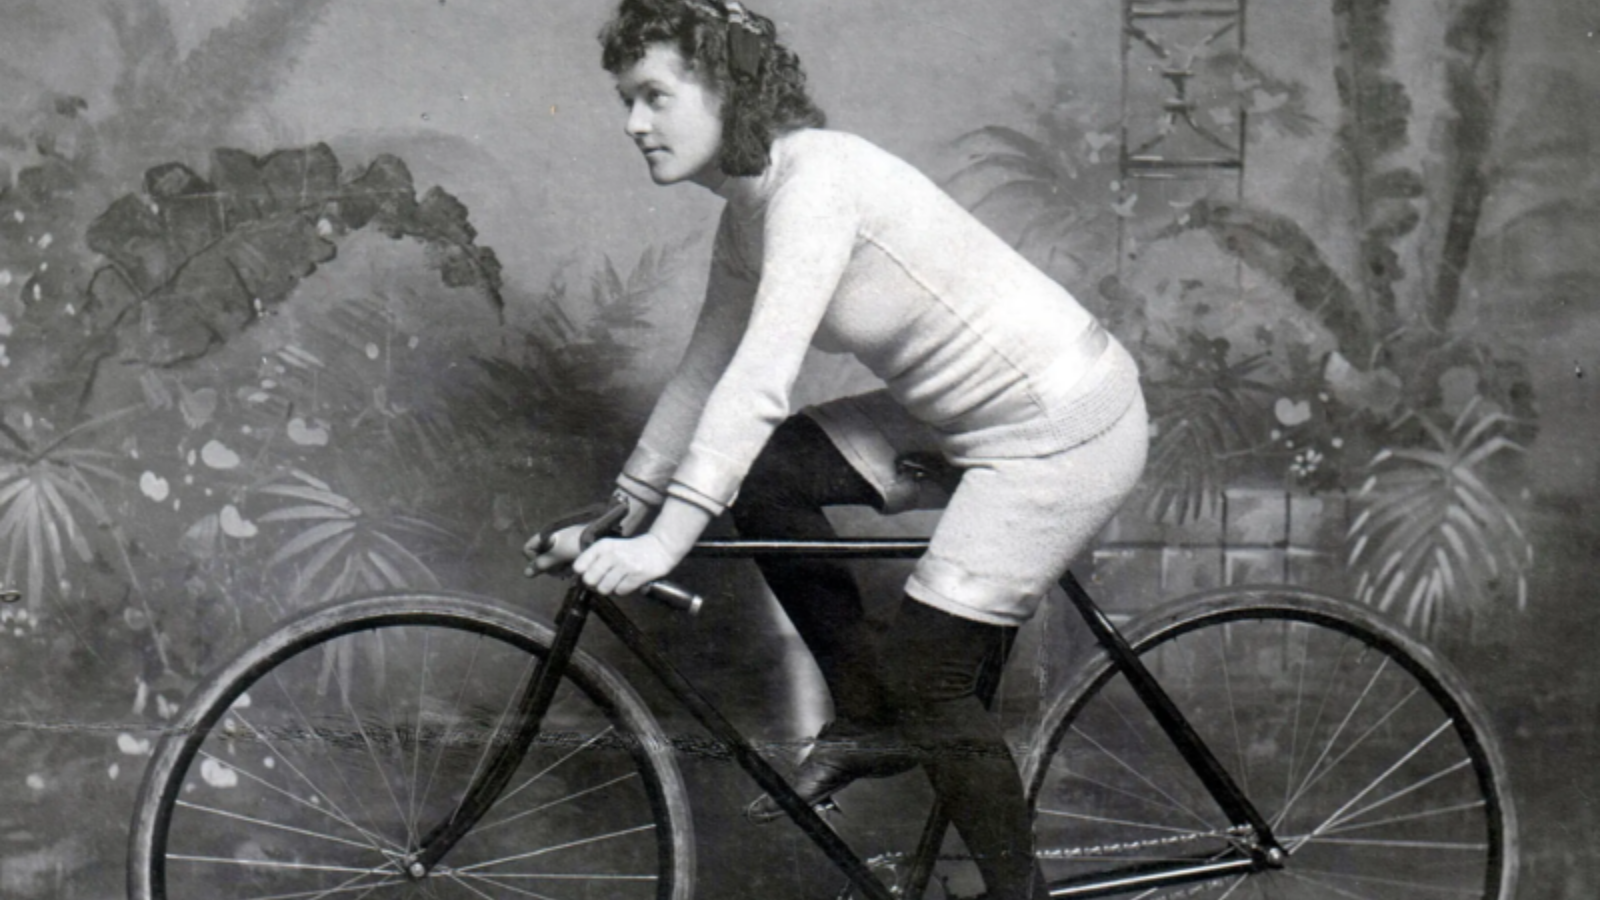 Lisette world champion 1896